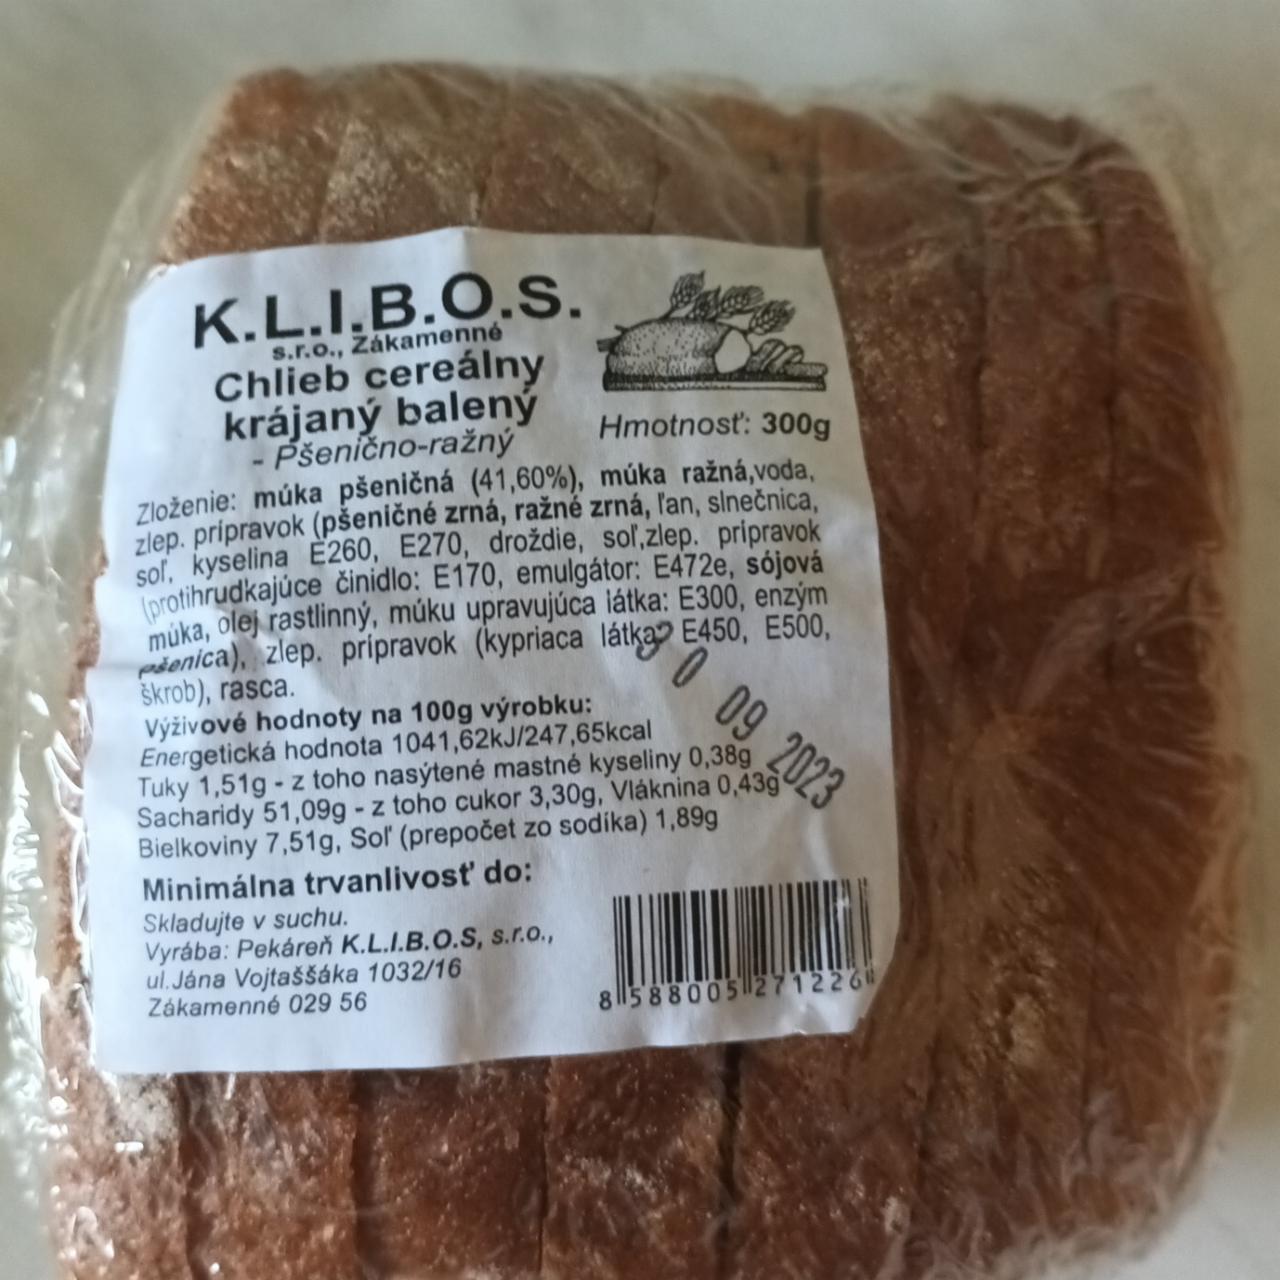 Fotografie - Chlieb cereálny krájaný balený K.L.I.B.O.S.